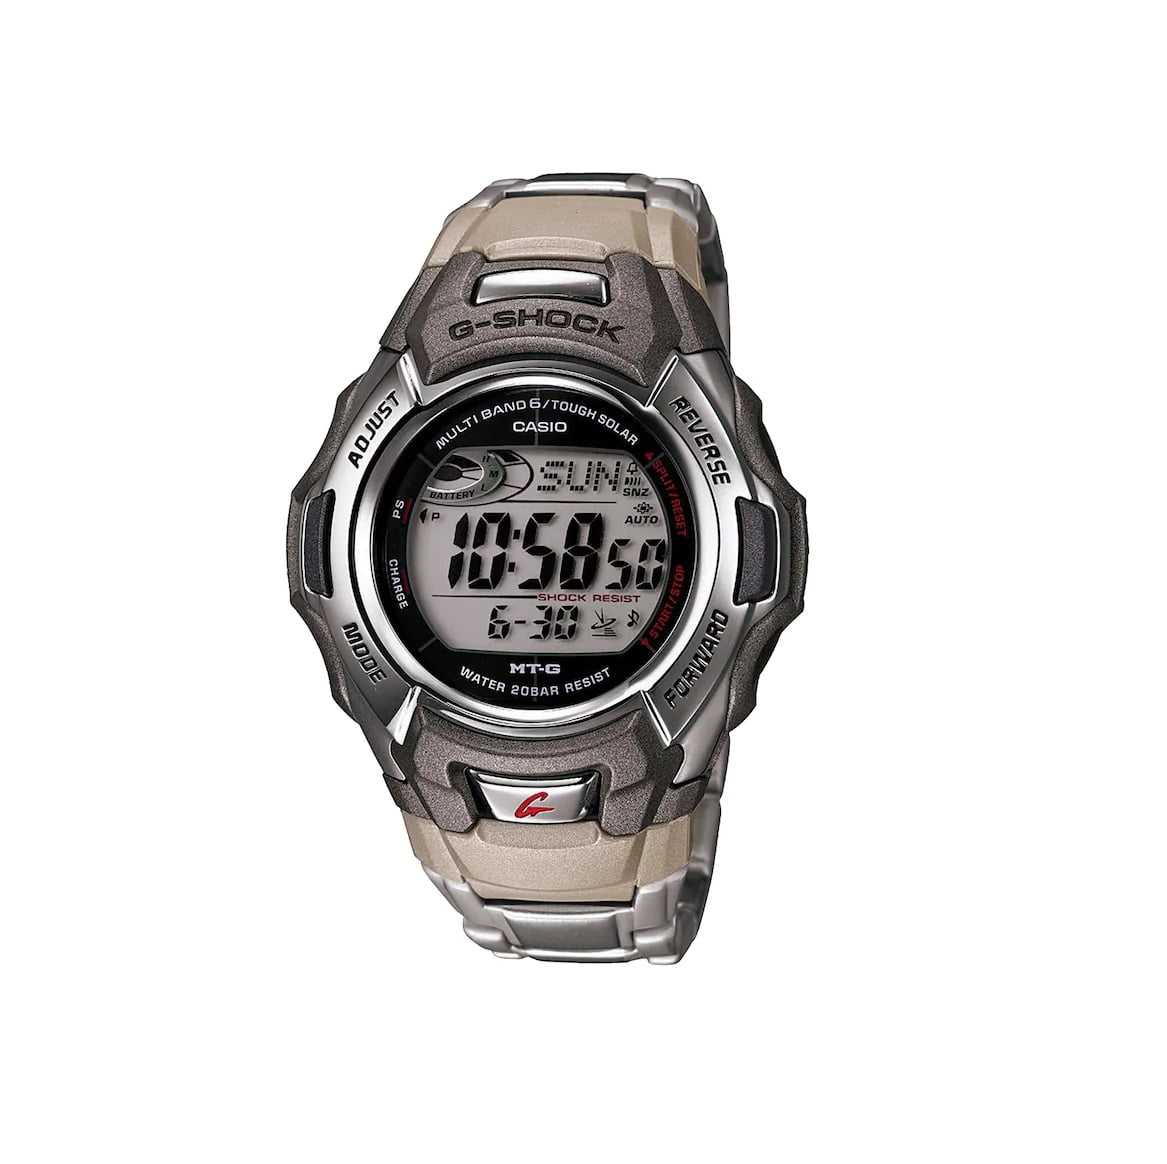 Men's G-Shock Stainless Steel Tough Solar Atomic Digital Watch MTGM900DA-8 - Walmart.com